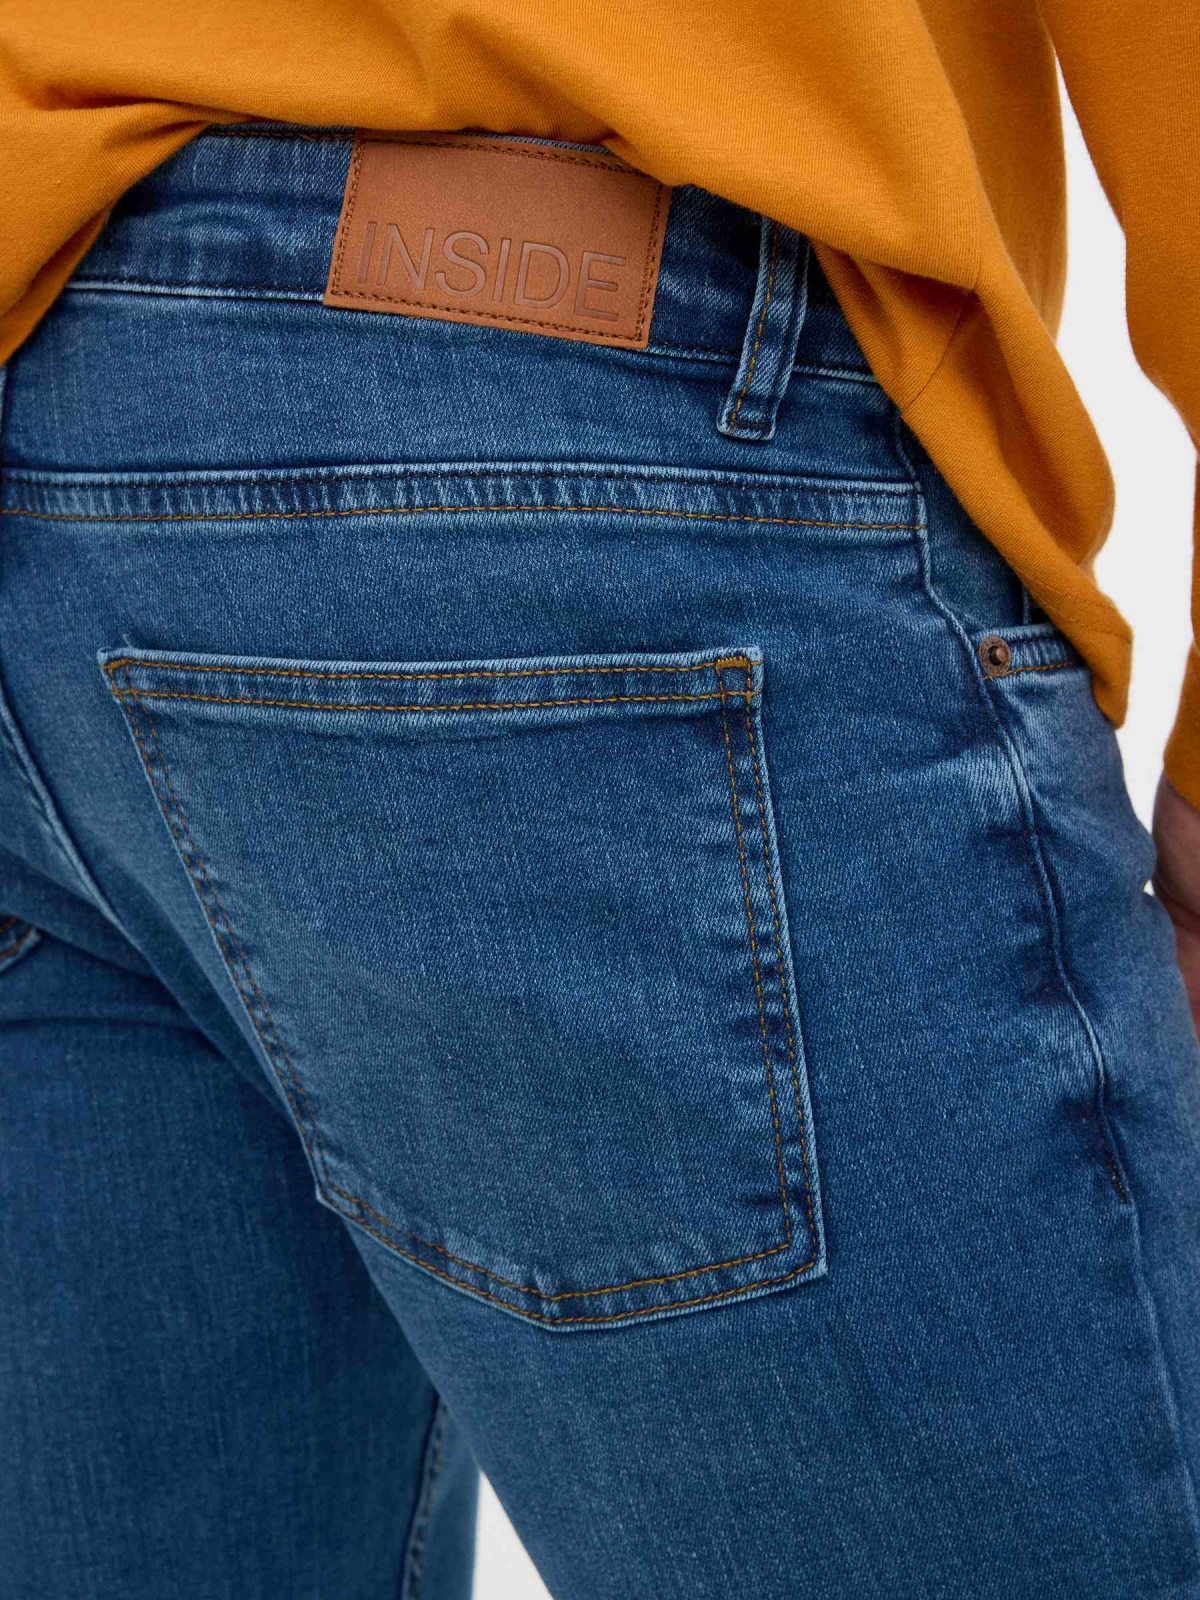 Super slim jeans blue detail view